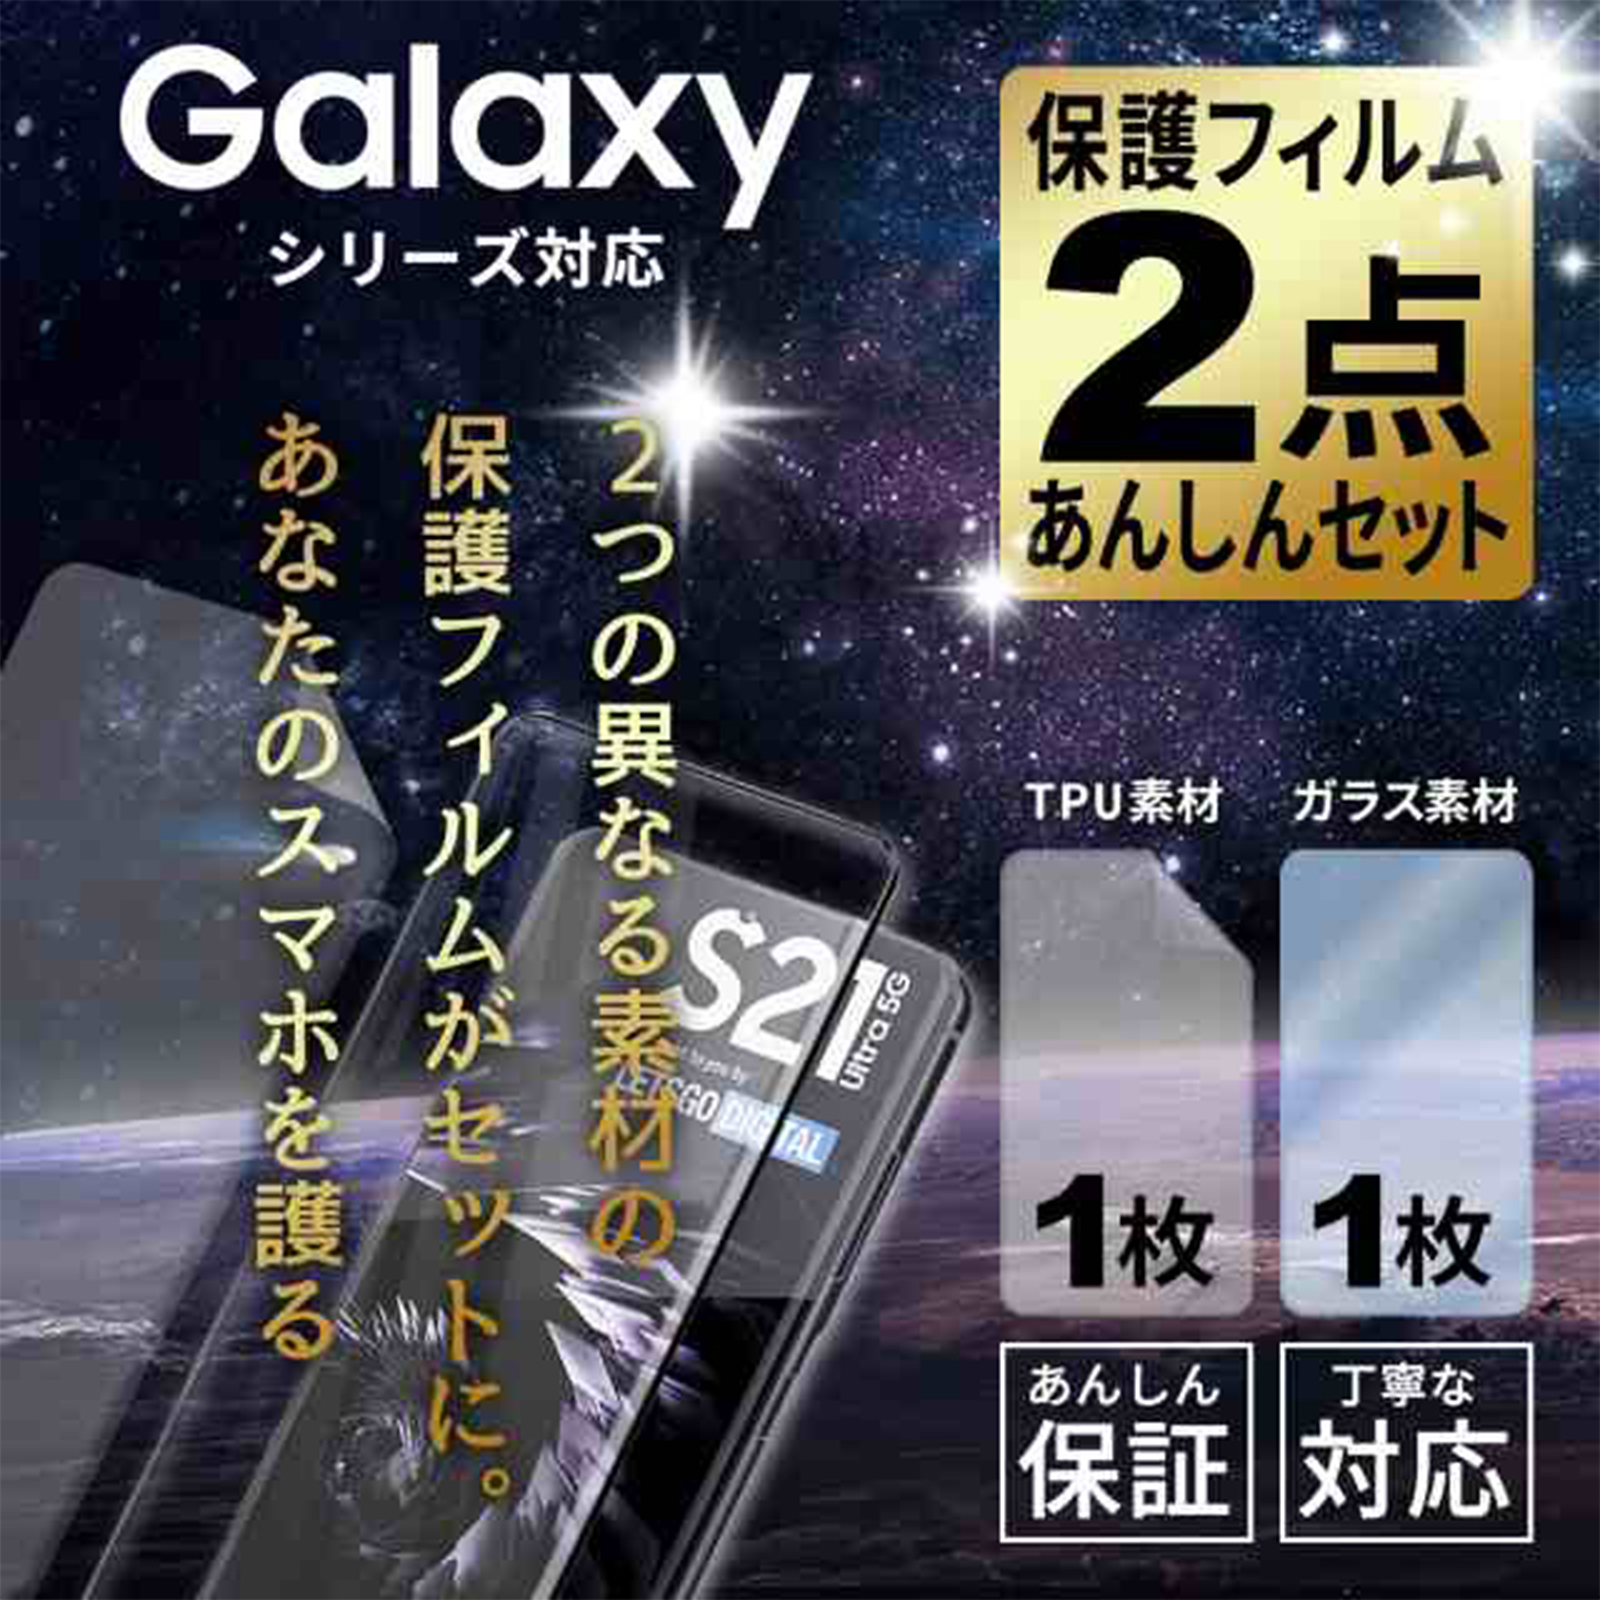 【2枚セット】 Galaxy s21 用 ガラスフィルム TPUフィルム 指紋認証 S21 ultra 保護フィルム S20 ウルトラ S10 S9 5G SCG01 SC-51A フィルム 全面保護 高透明